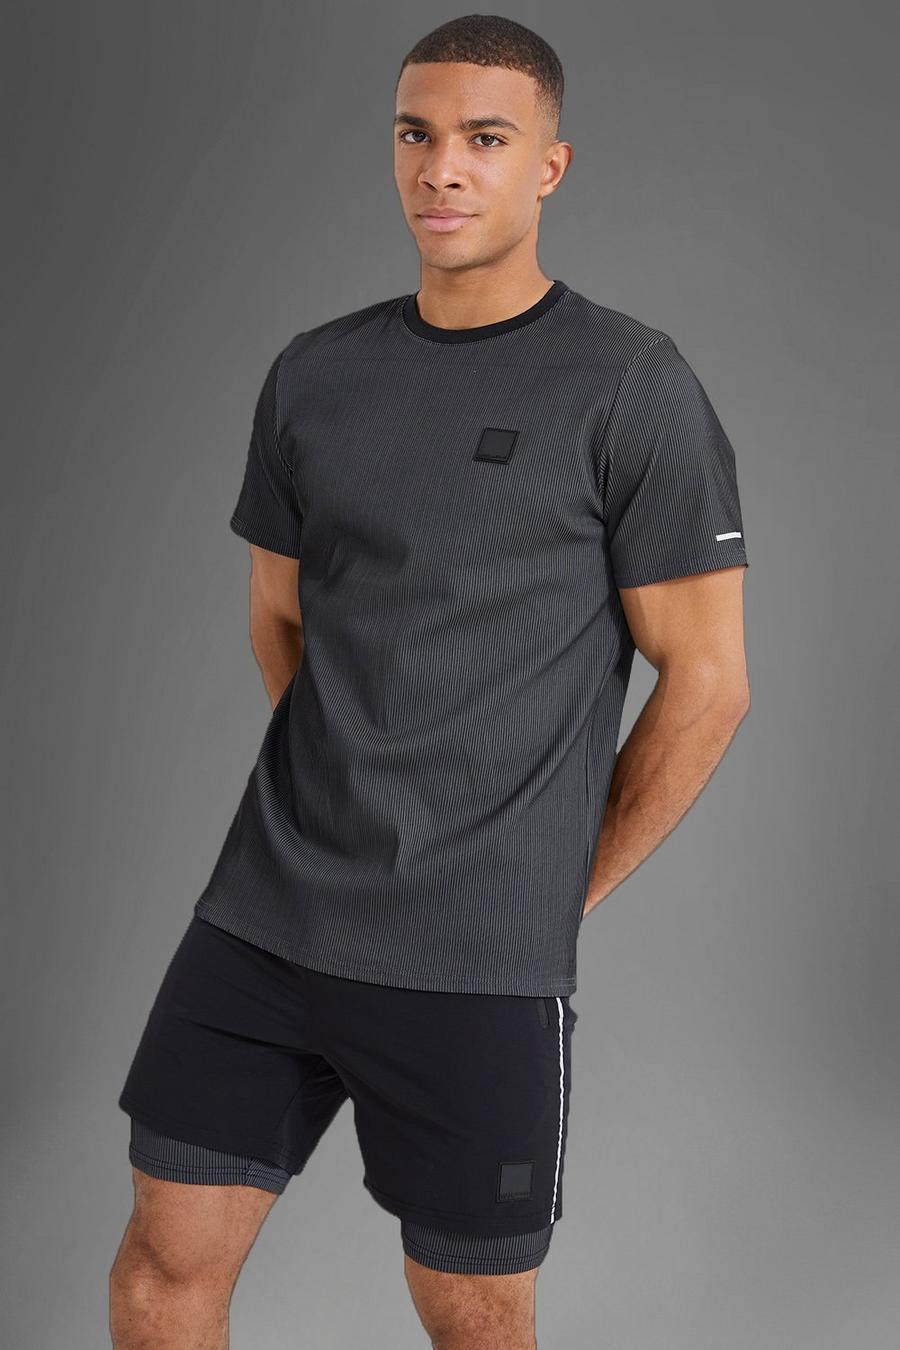 Camiseta MAN Active deportiva resistente de canalé, Black nero